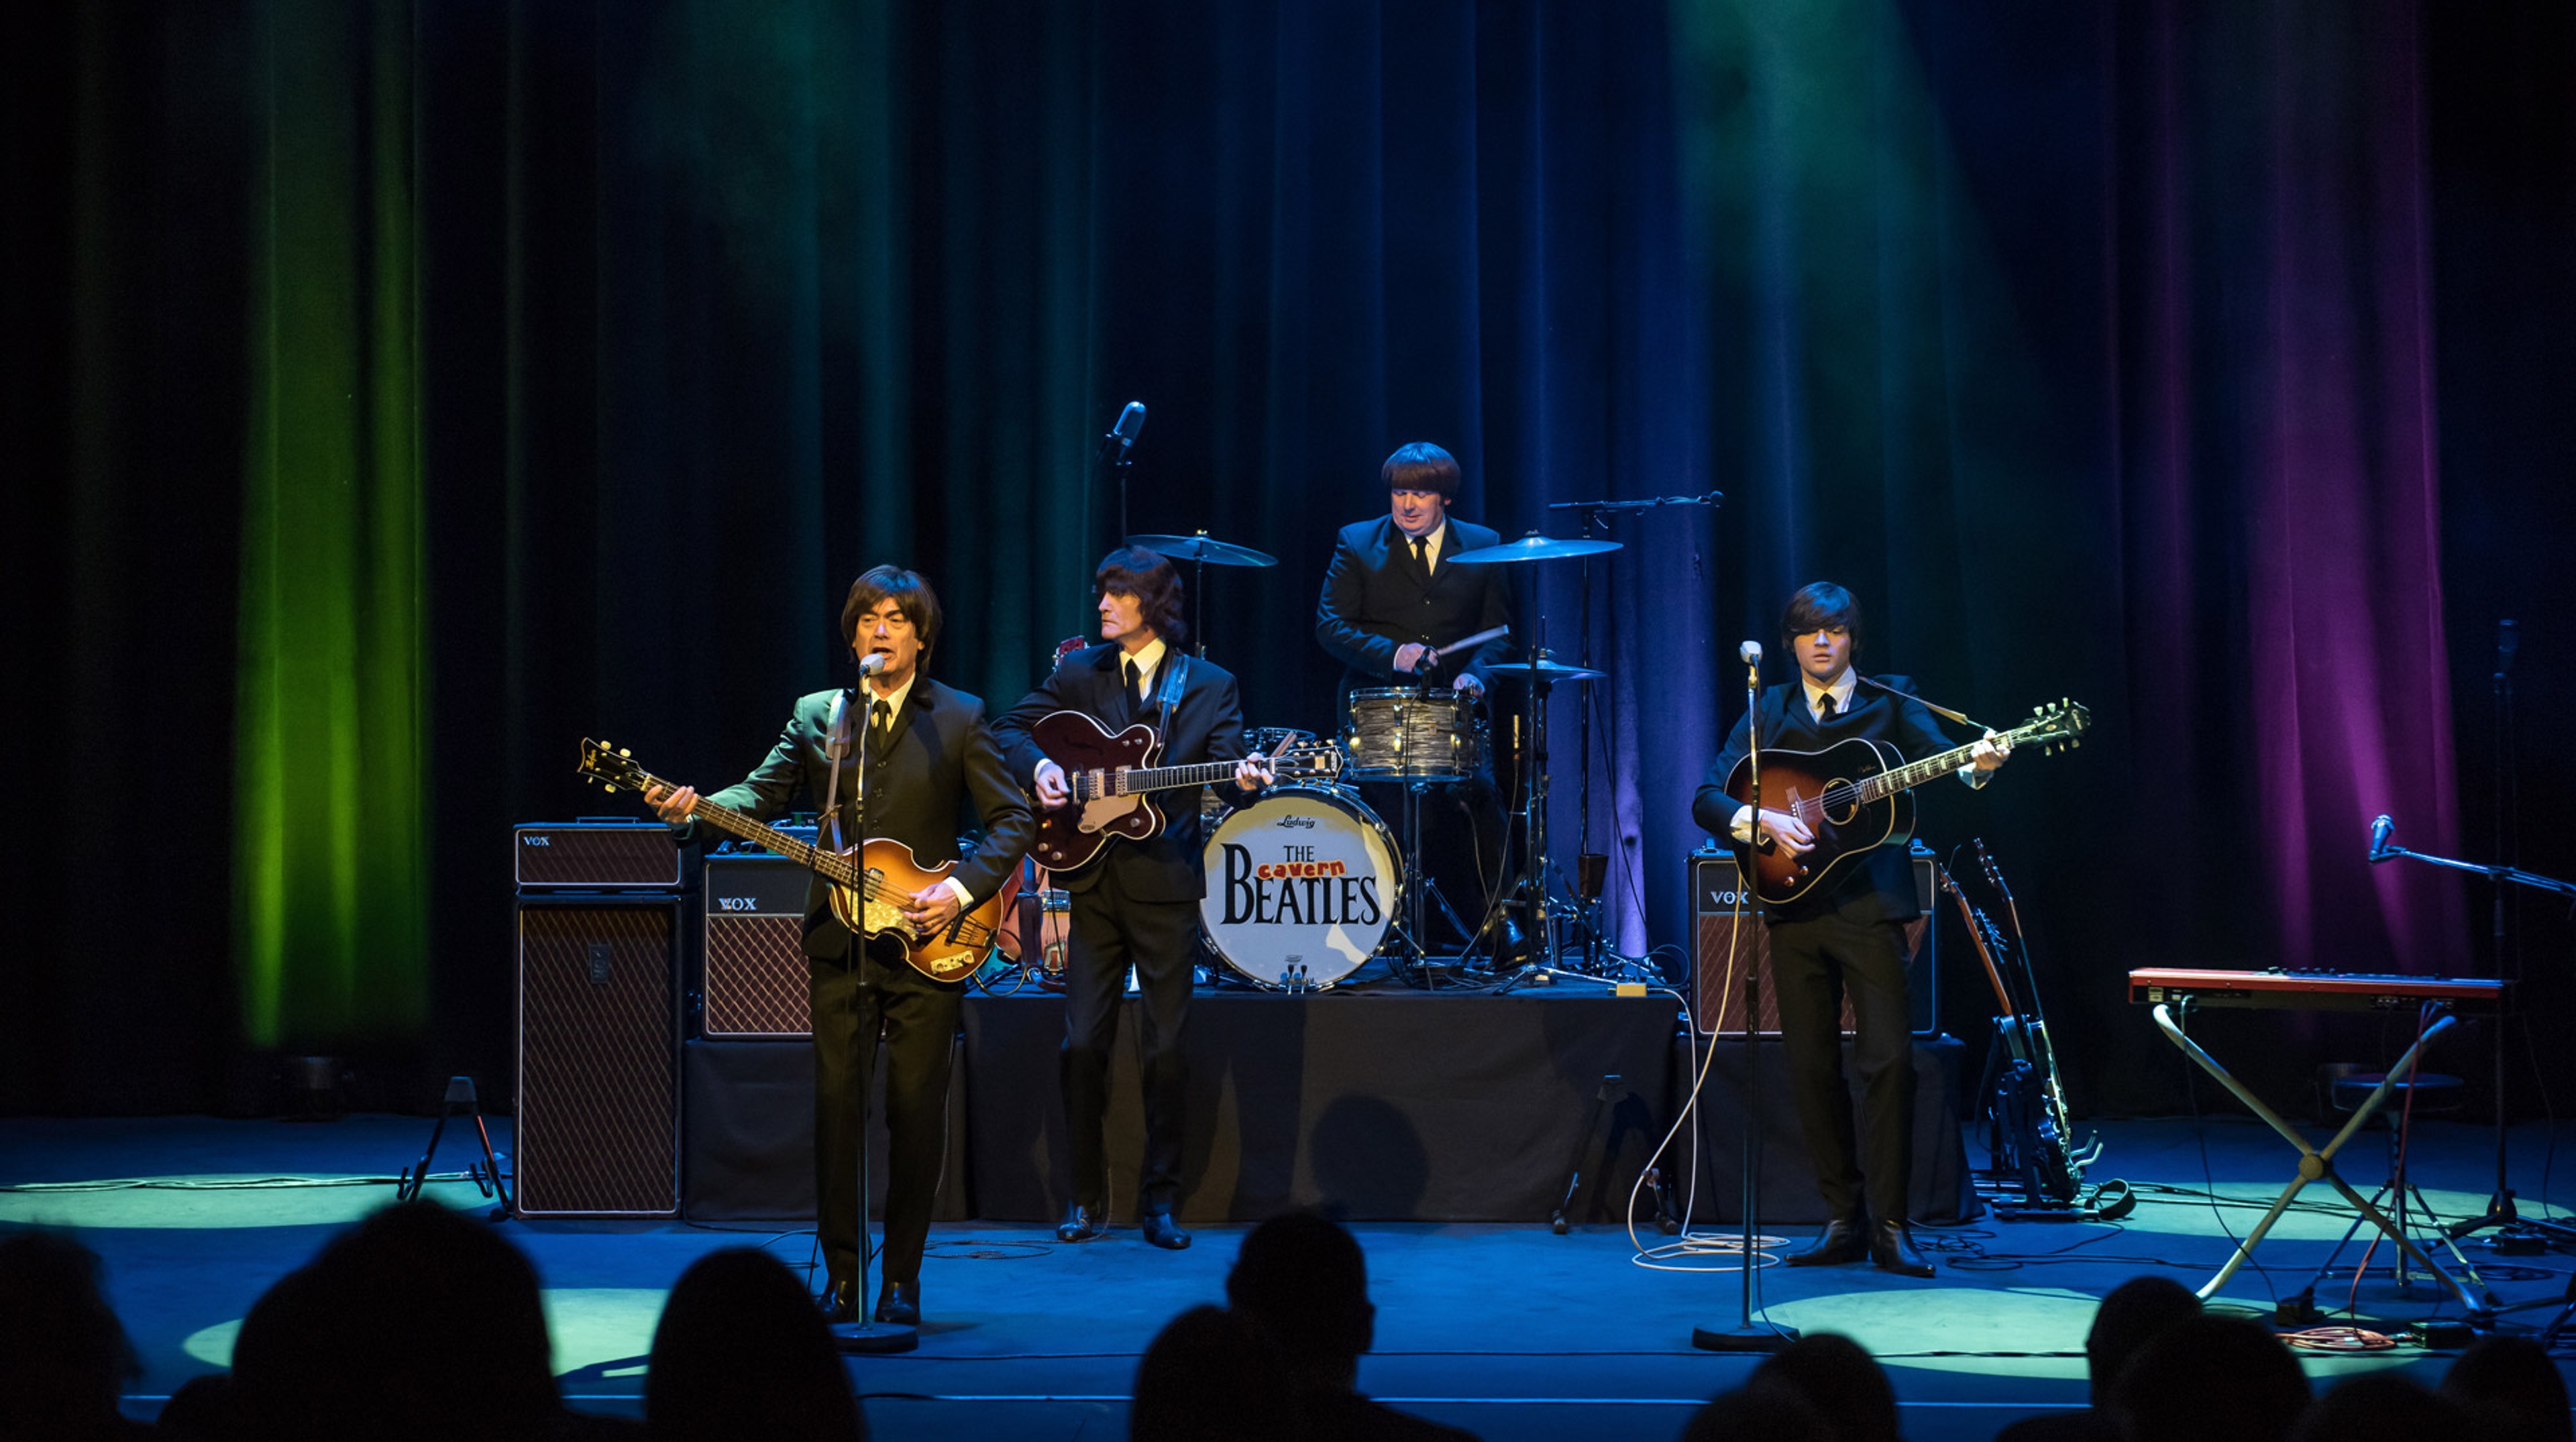 The Cavern Beatles står på scenen under spotlights och spelar inför publik